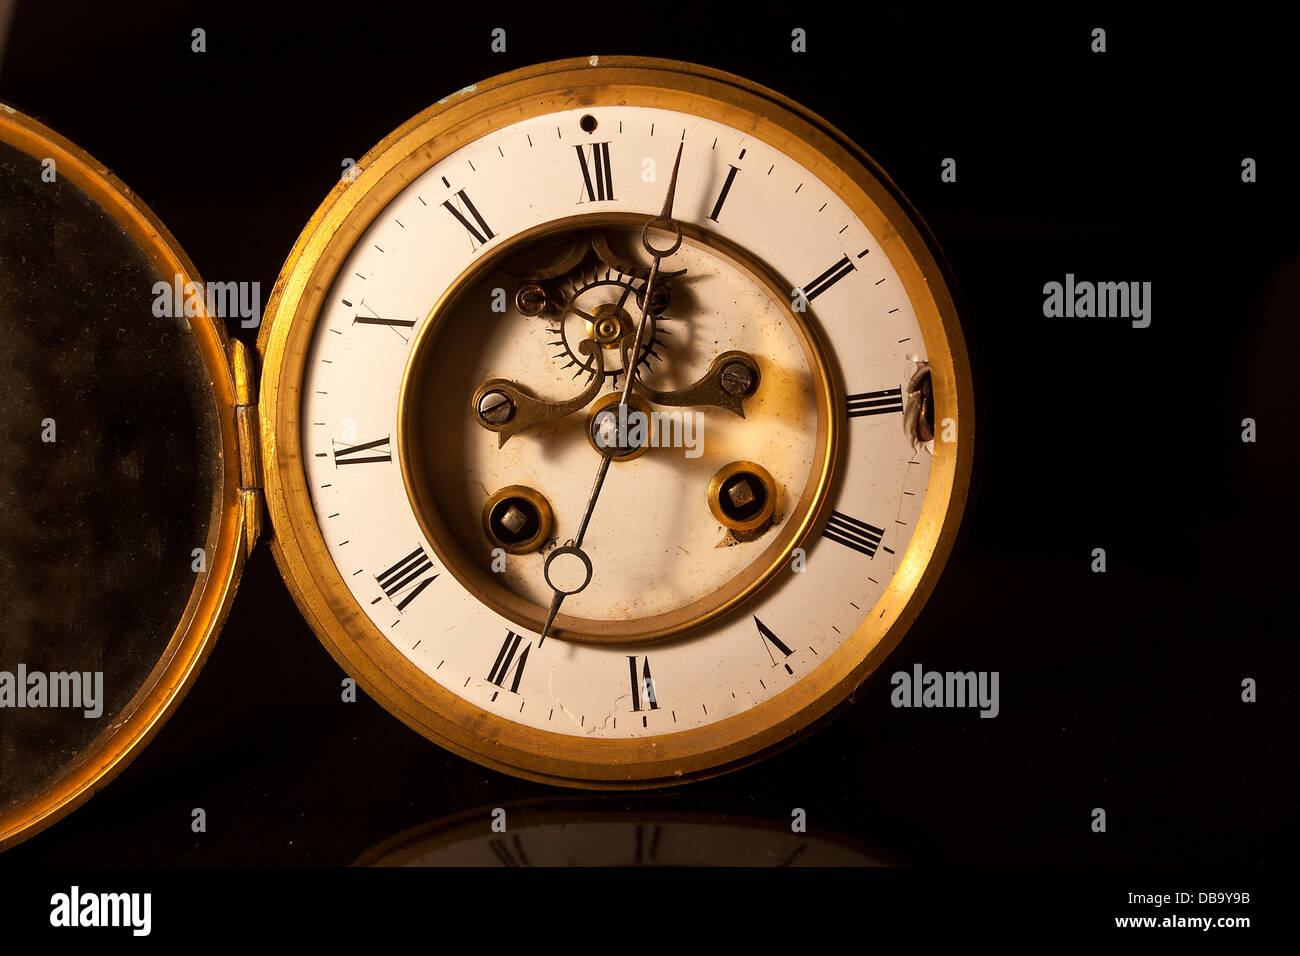 Montrant le visage et ligne téléphonique d'une vieille horloge antique victorienne britannique Banque D'Images